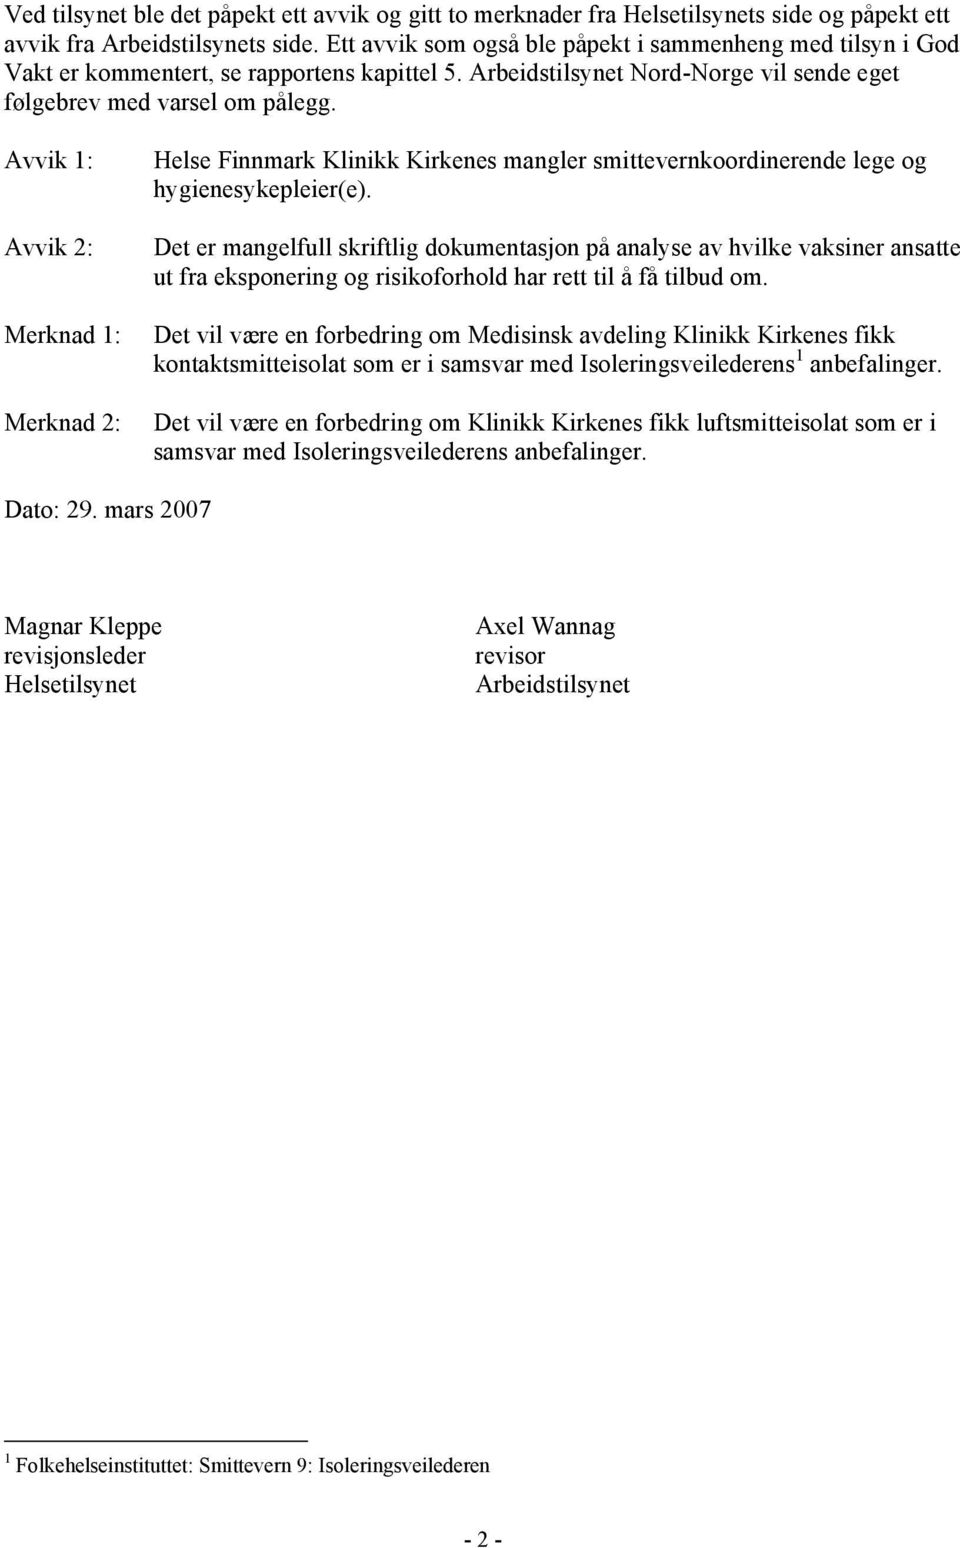 Avvik 1: Avvik 2: Merknad 1: Merknad 2: Helse Finnmark Klinikk Kirkenes mangler smittevernkoordinerende lege og hygienesykepleier(e).